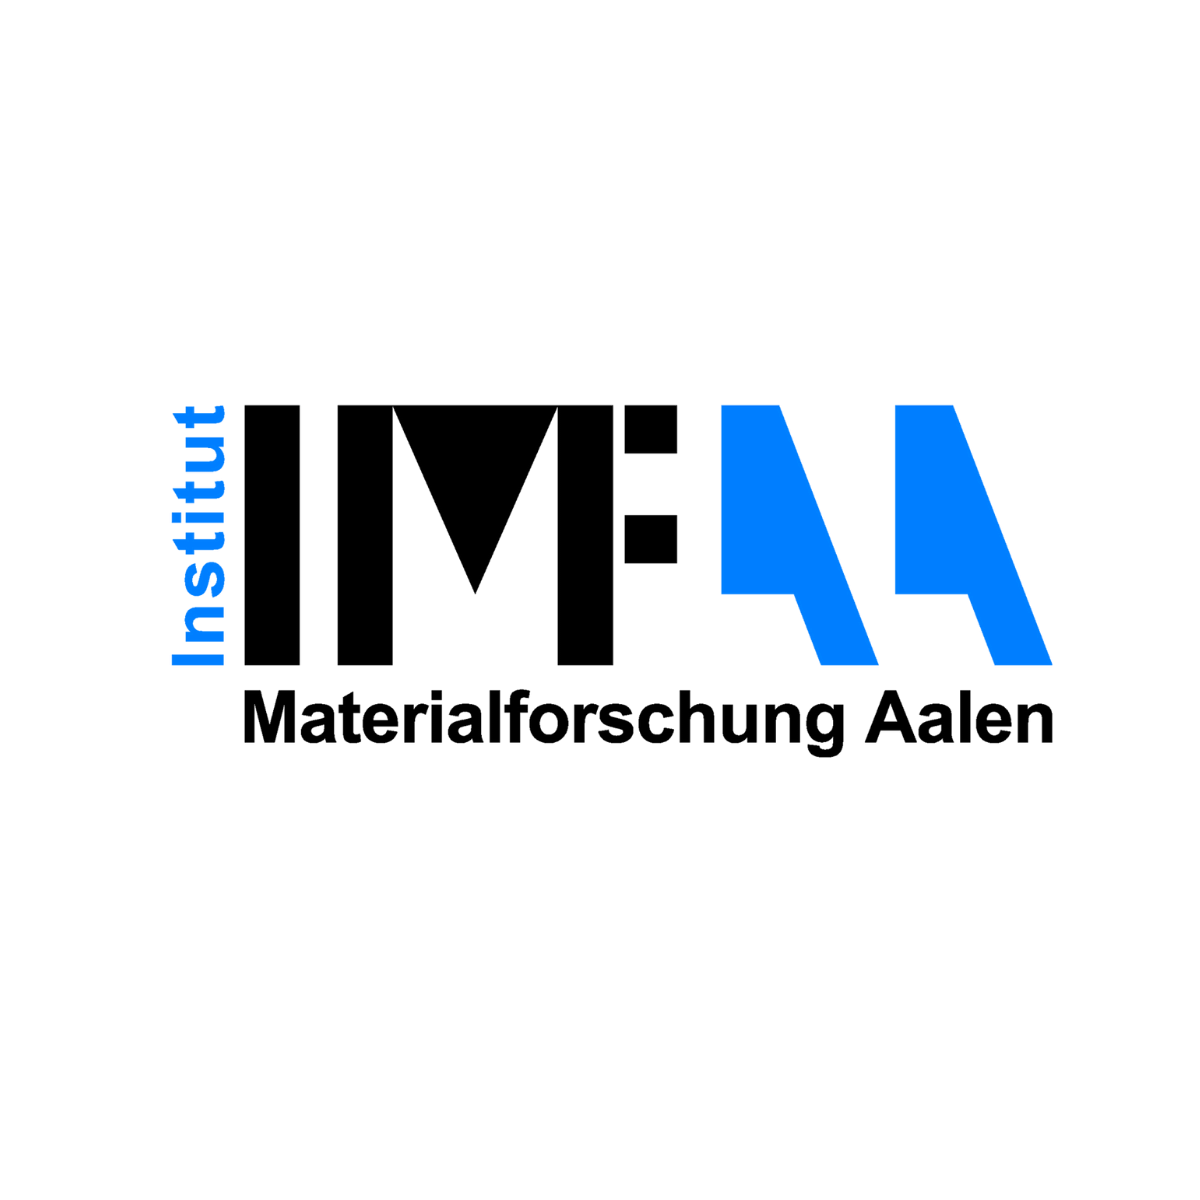 IMFAA Institut für Materialforschung Aalen